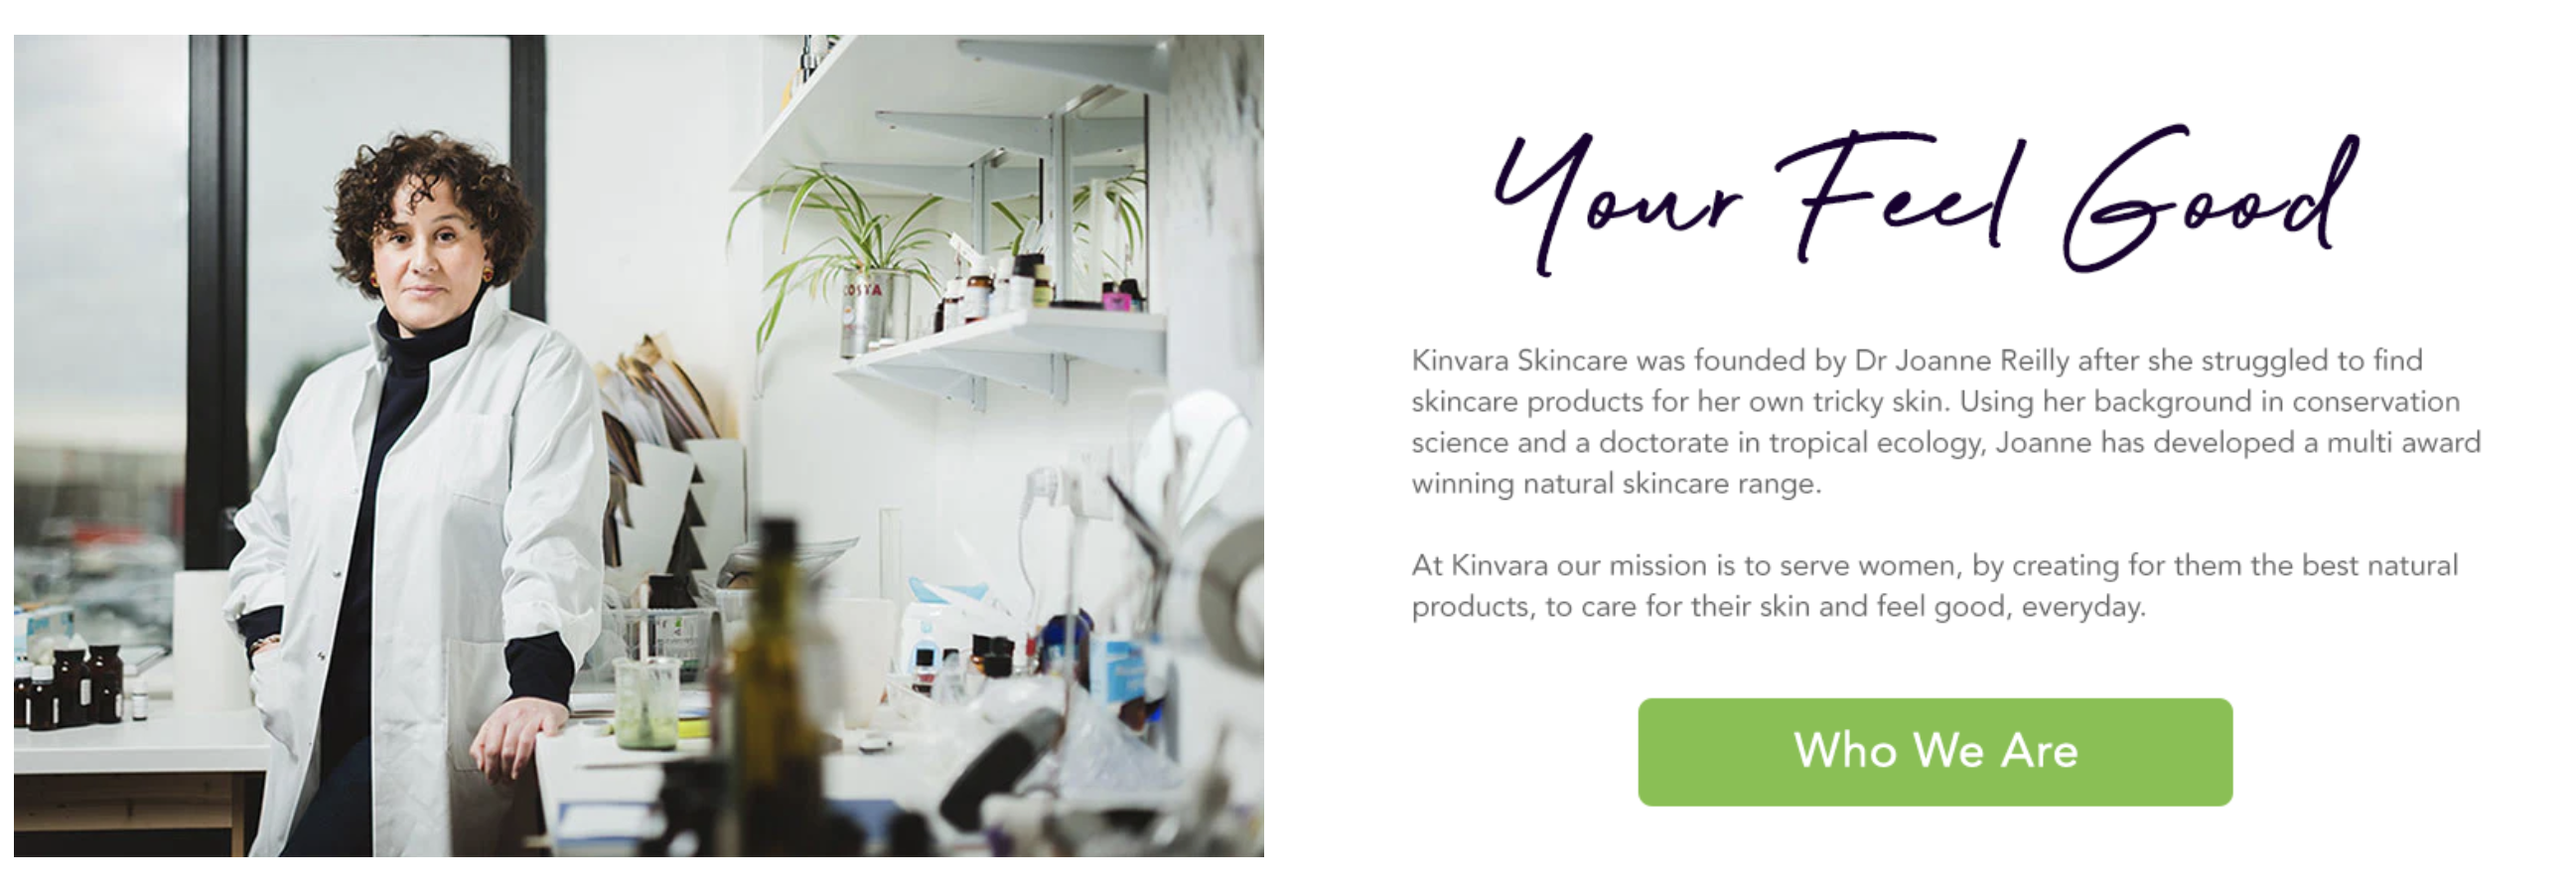 Kinvara homepage